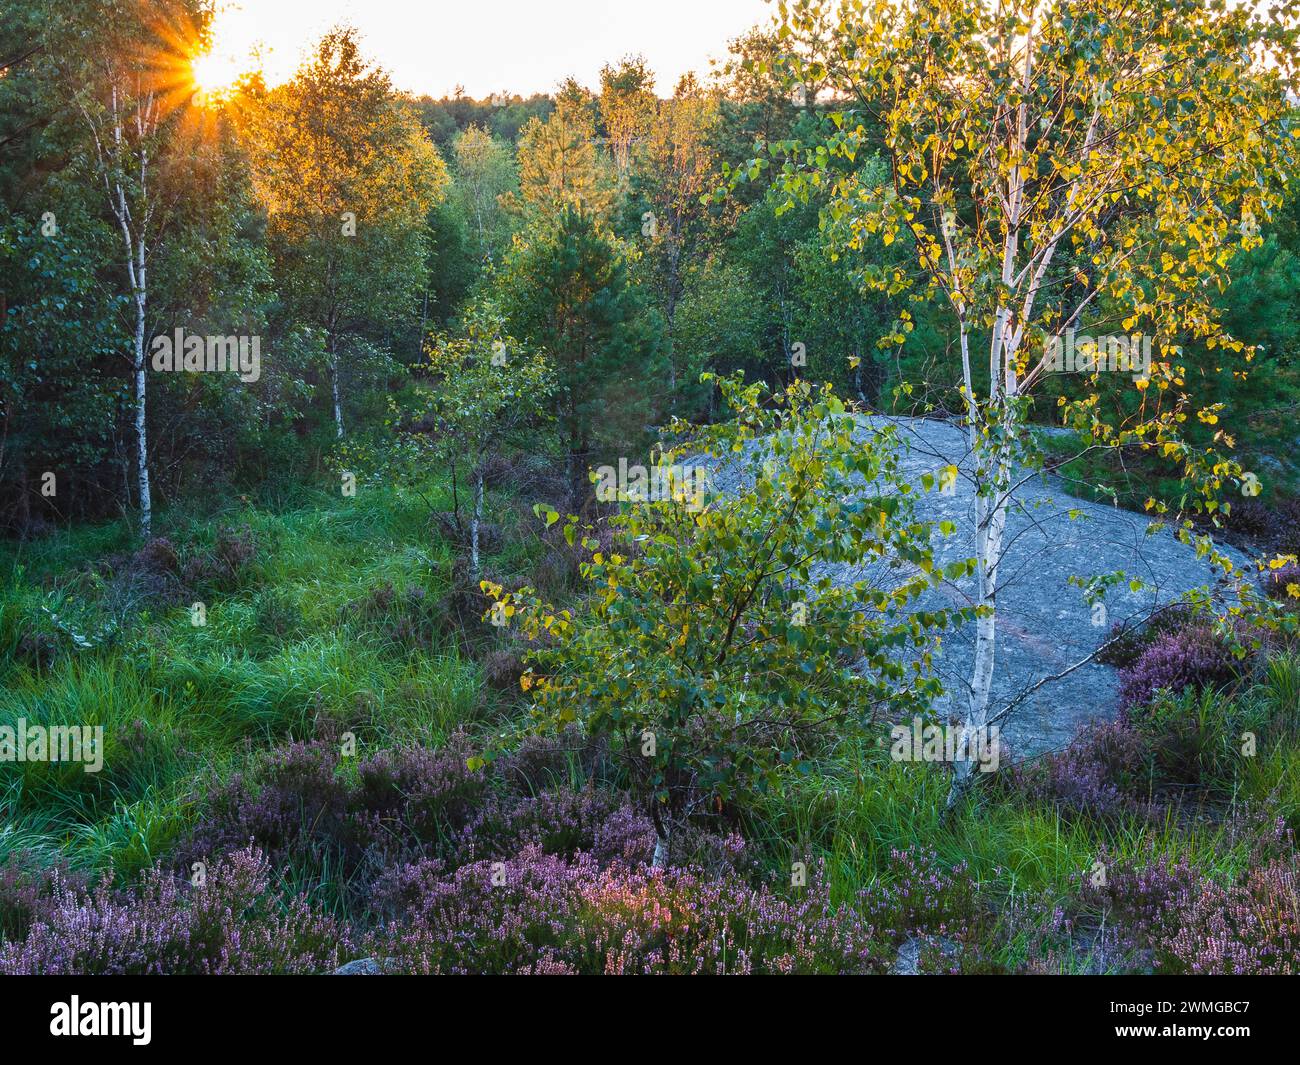 Les rayons dorés du soleil couchant filtrent à travers les arbres d'une forêt suédoise tranquille, projetant une lueur chaude sur le paysage luxuriant. Un gros rocher Banque D'Images